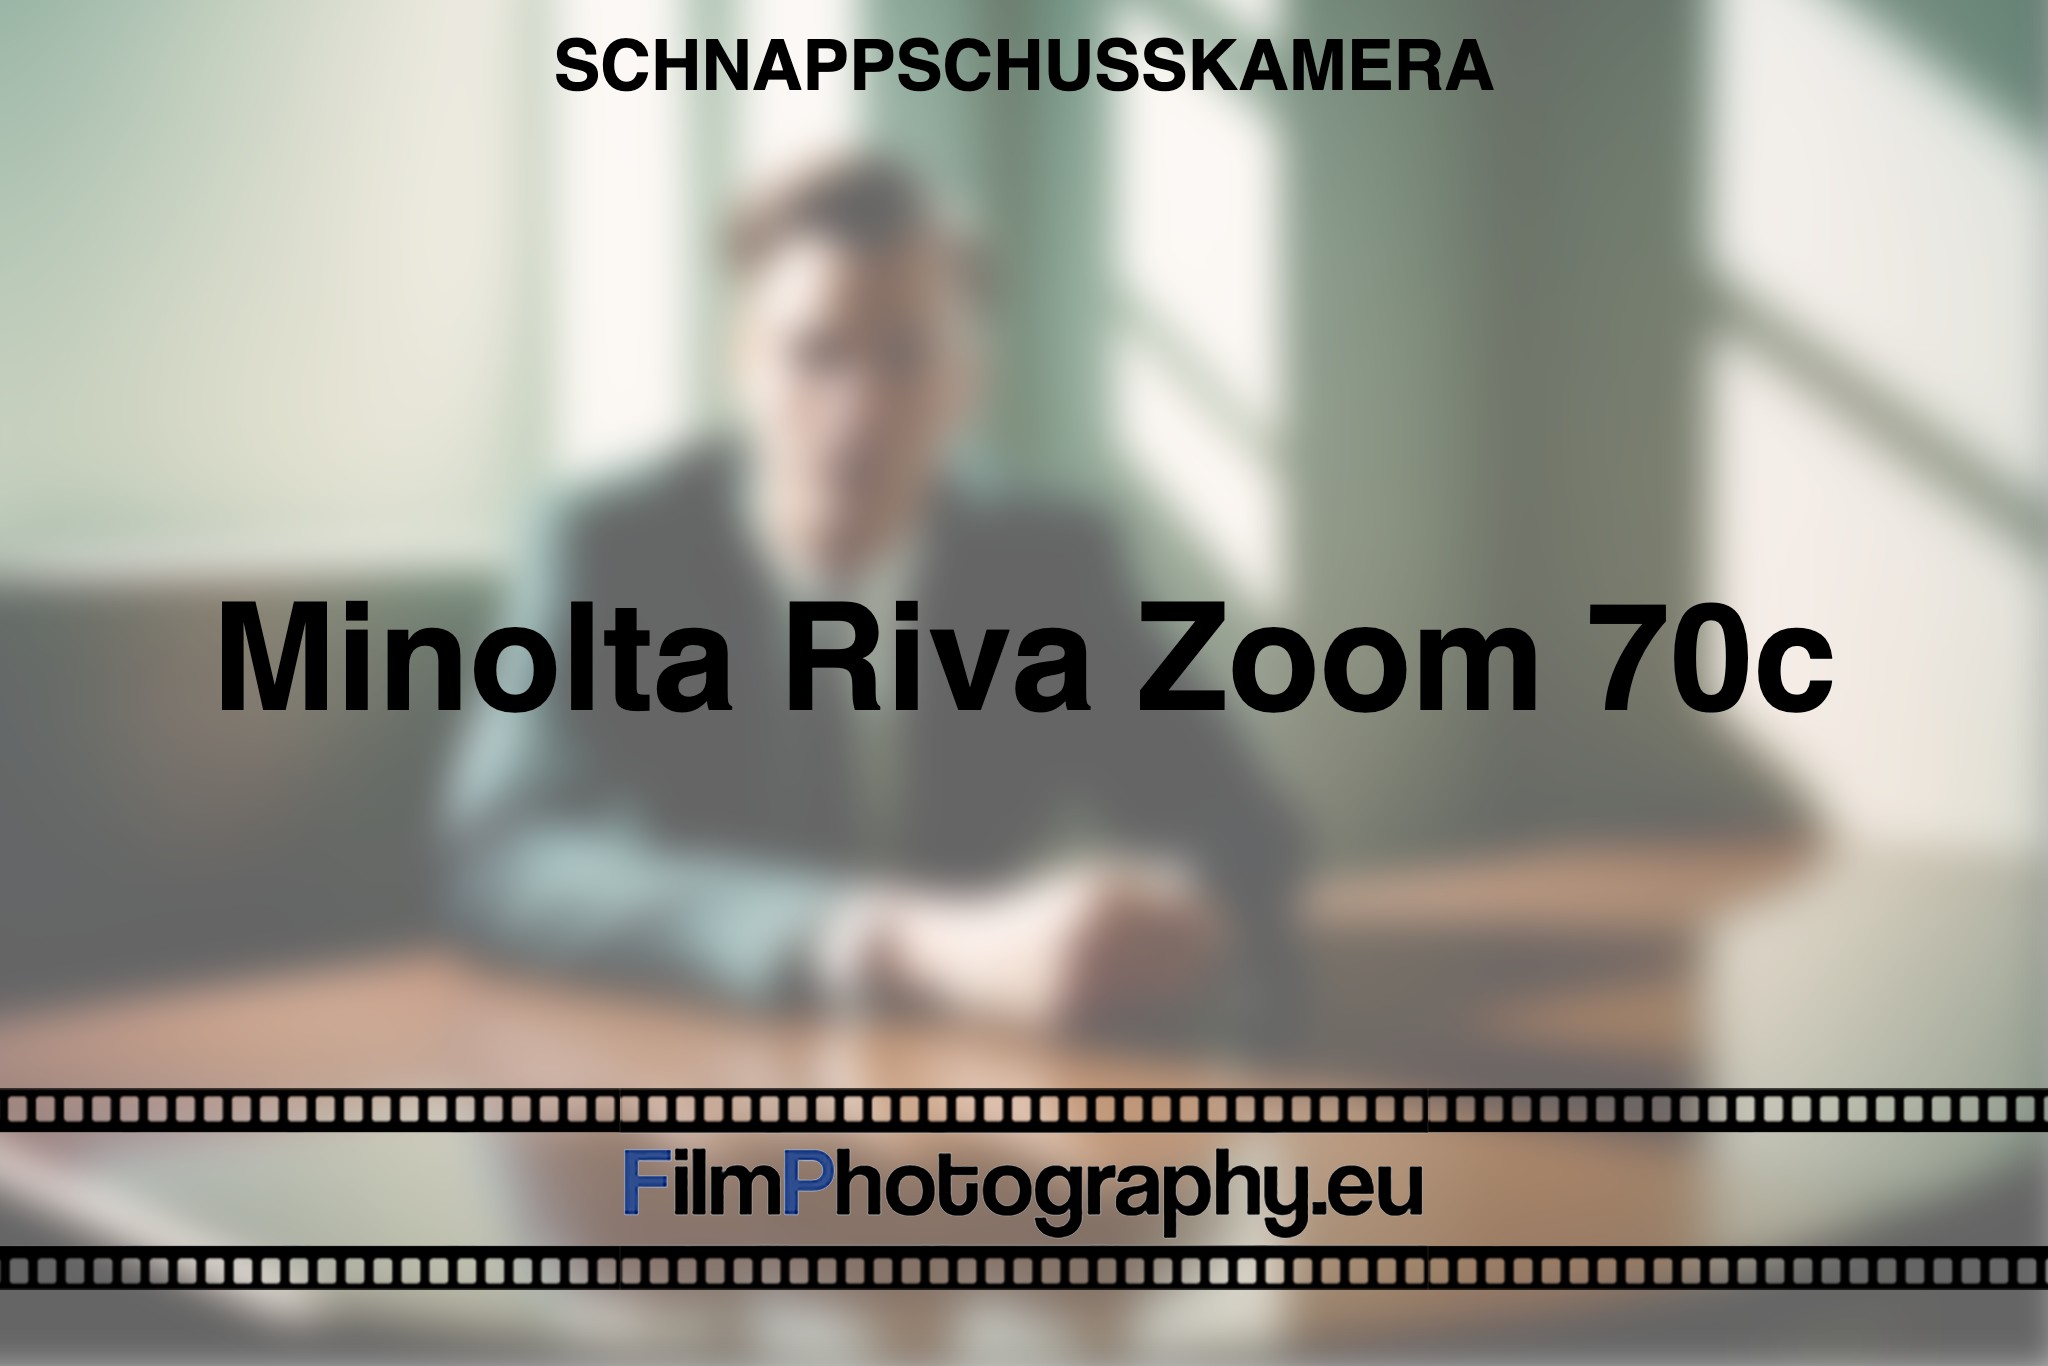 minolta-riva-zoom-70c-schnappschusskamera-bnv